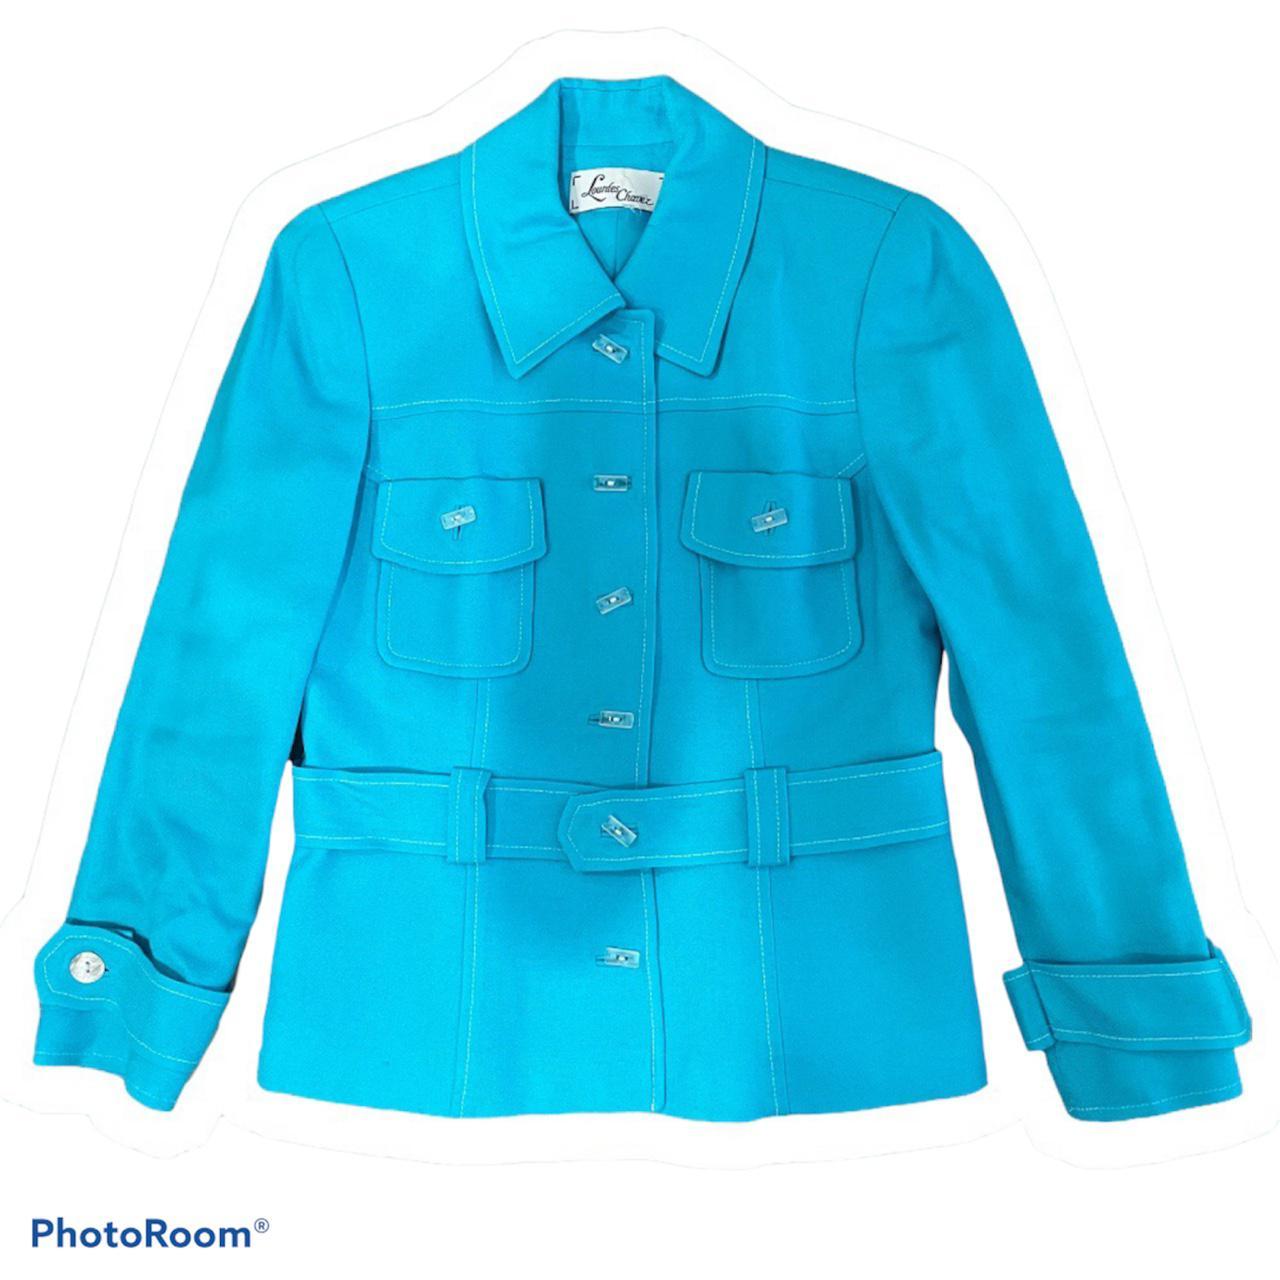 Lourdes Women's Blue Jacket